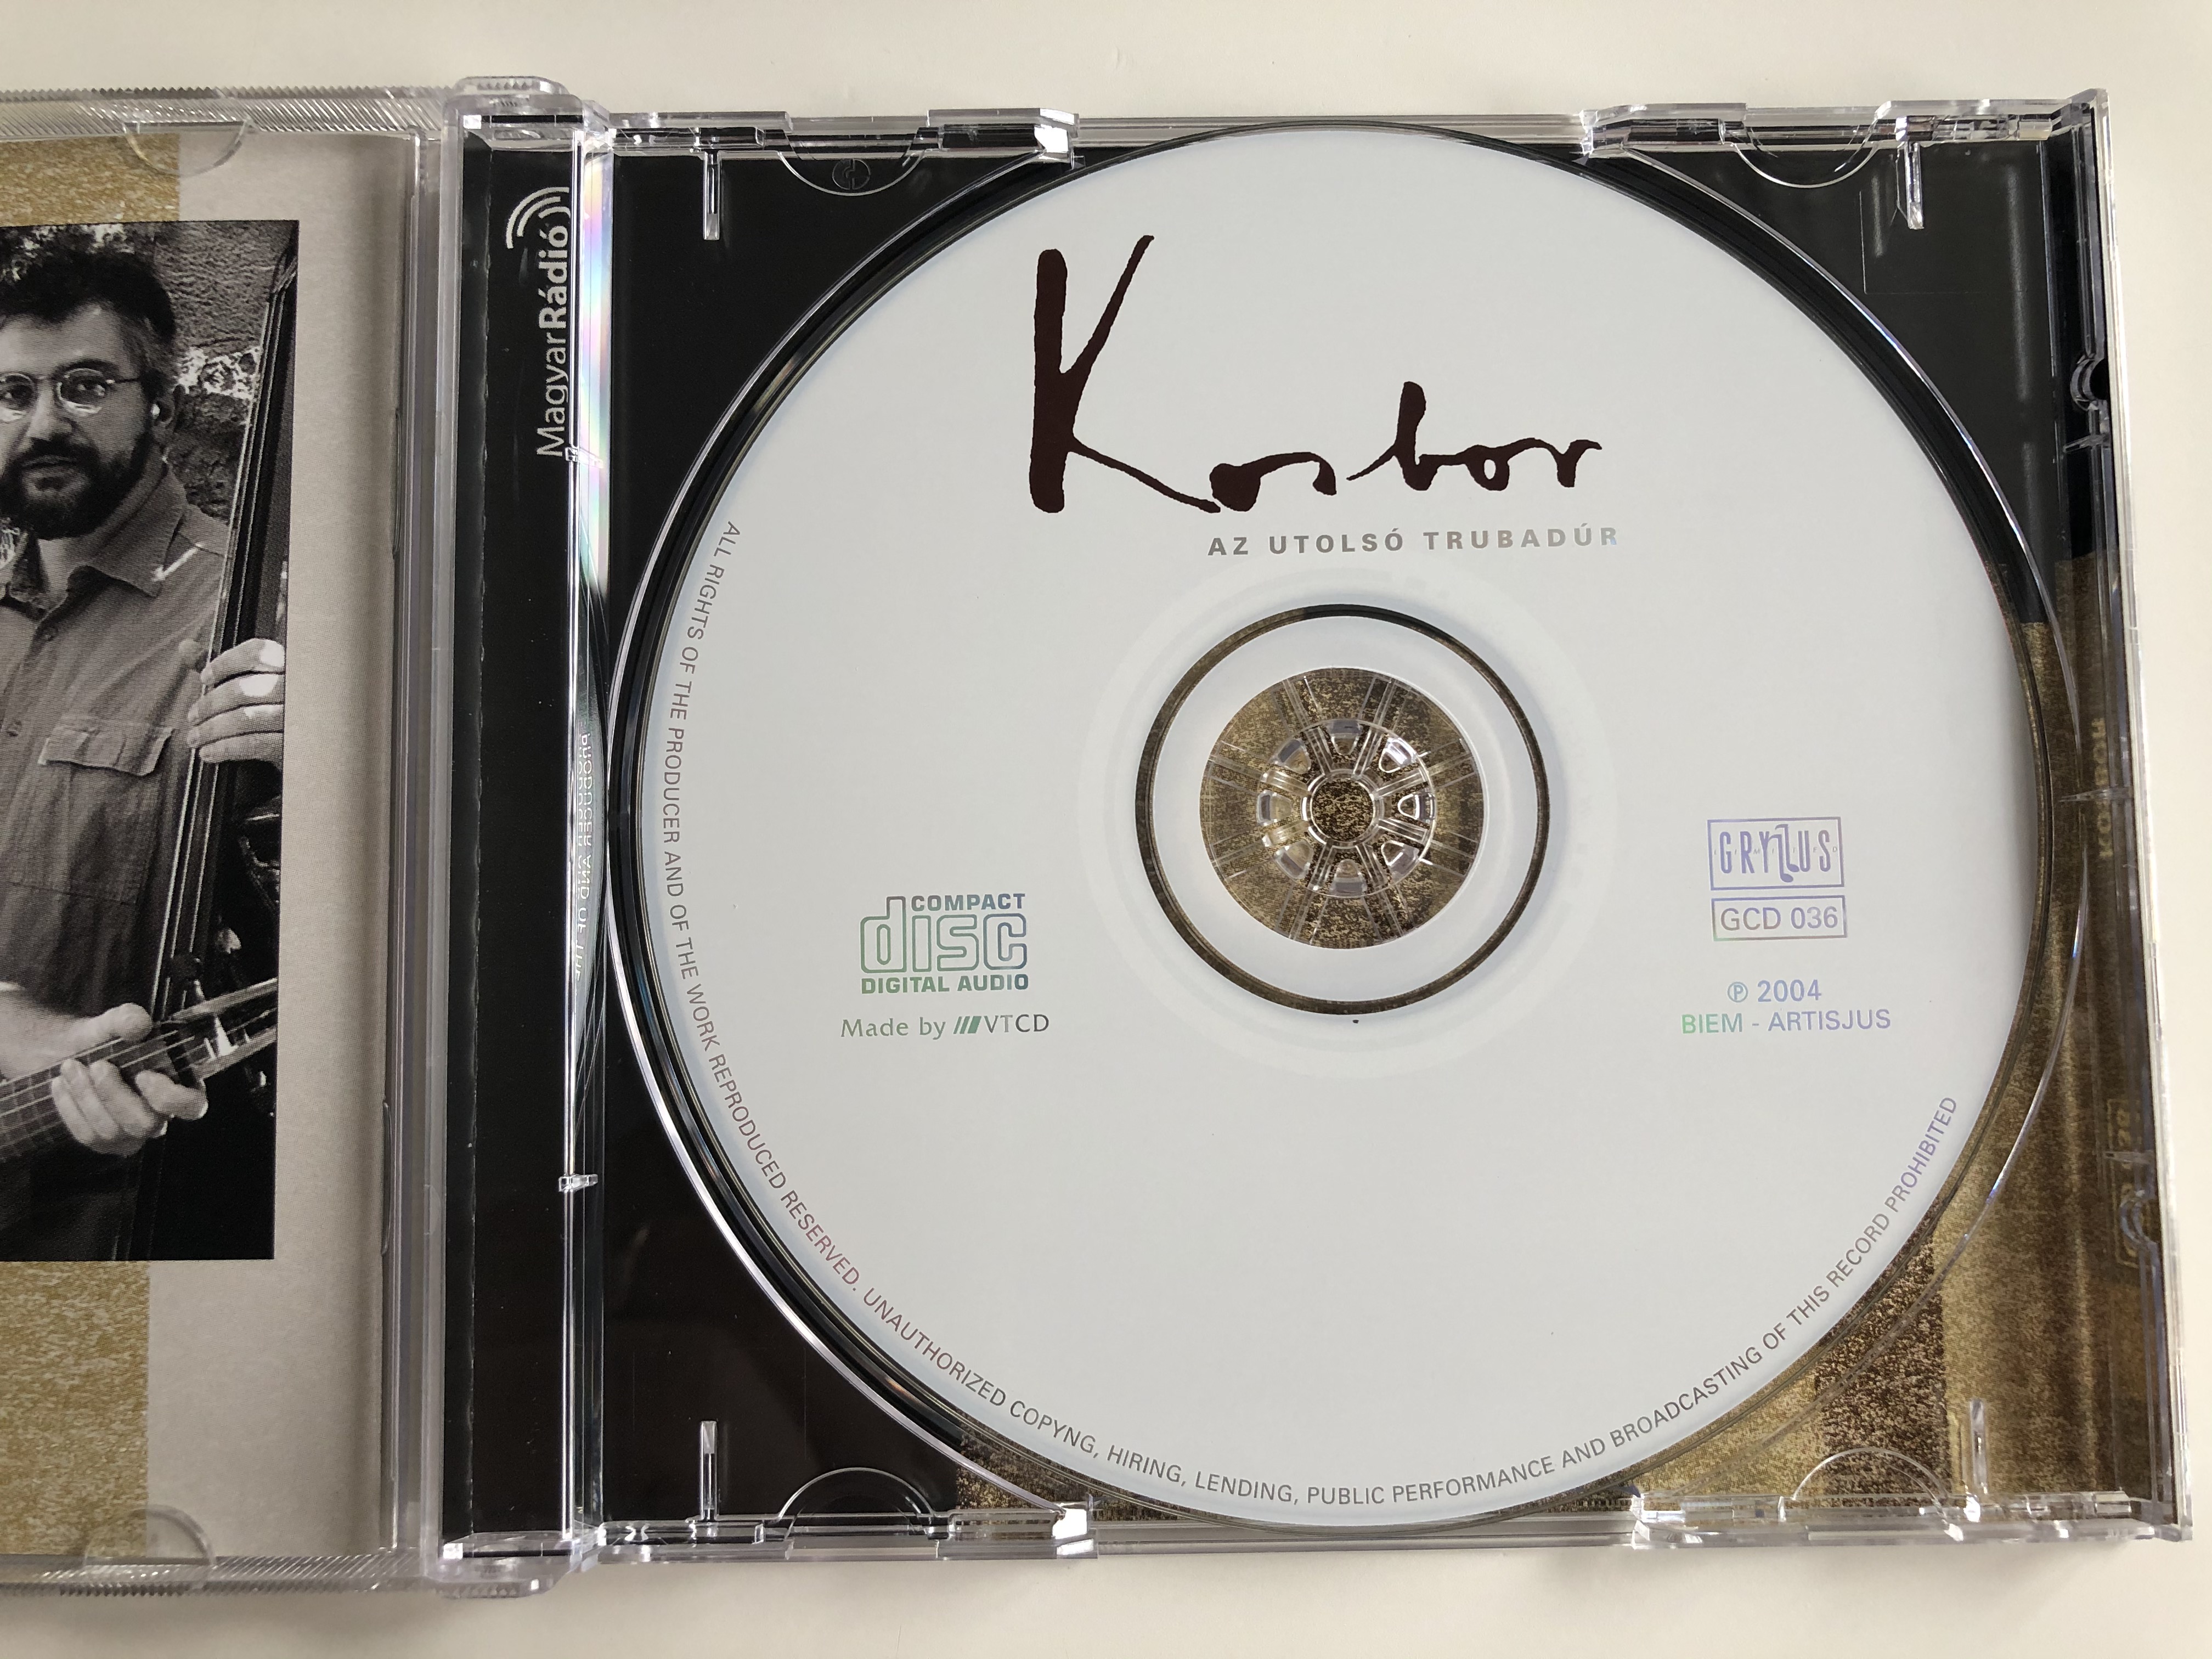 kosbor-az-utols-trubad-r-gryllus-audio-cd-2004-gcd-036-6-.jpg